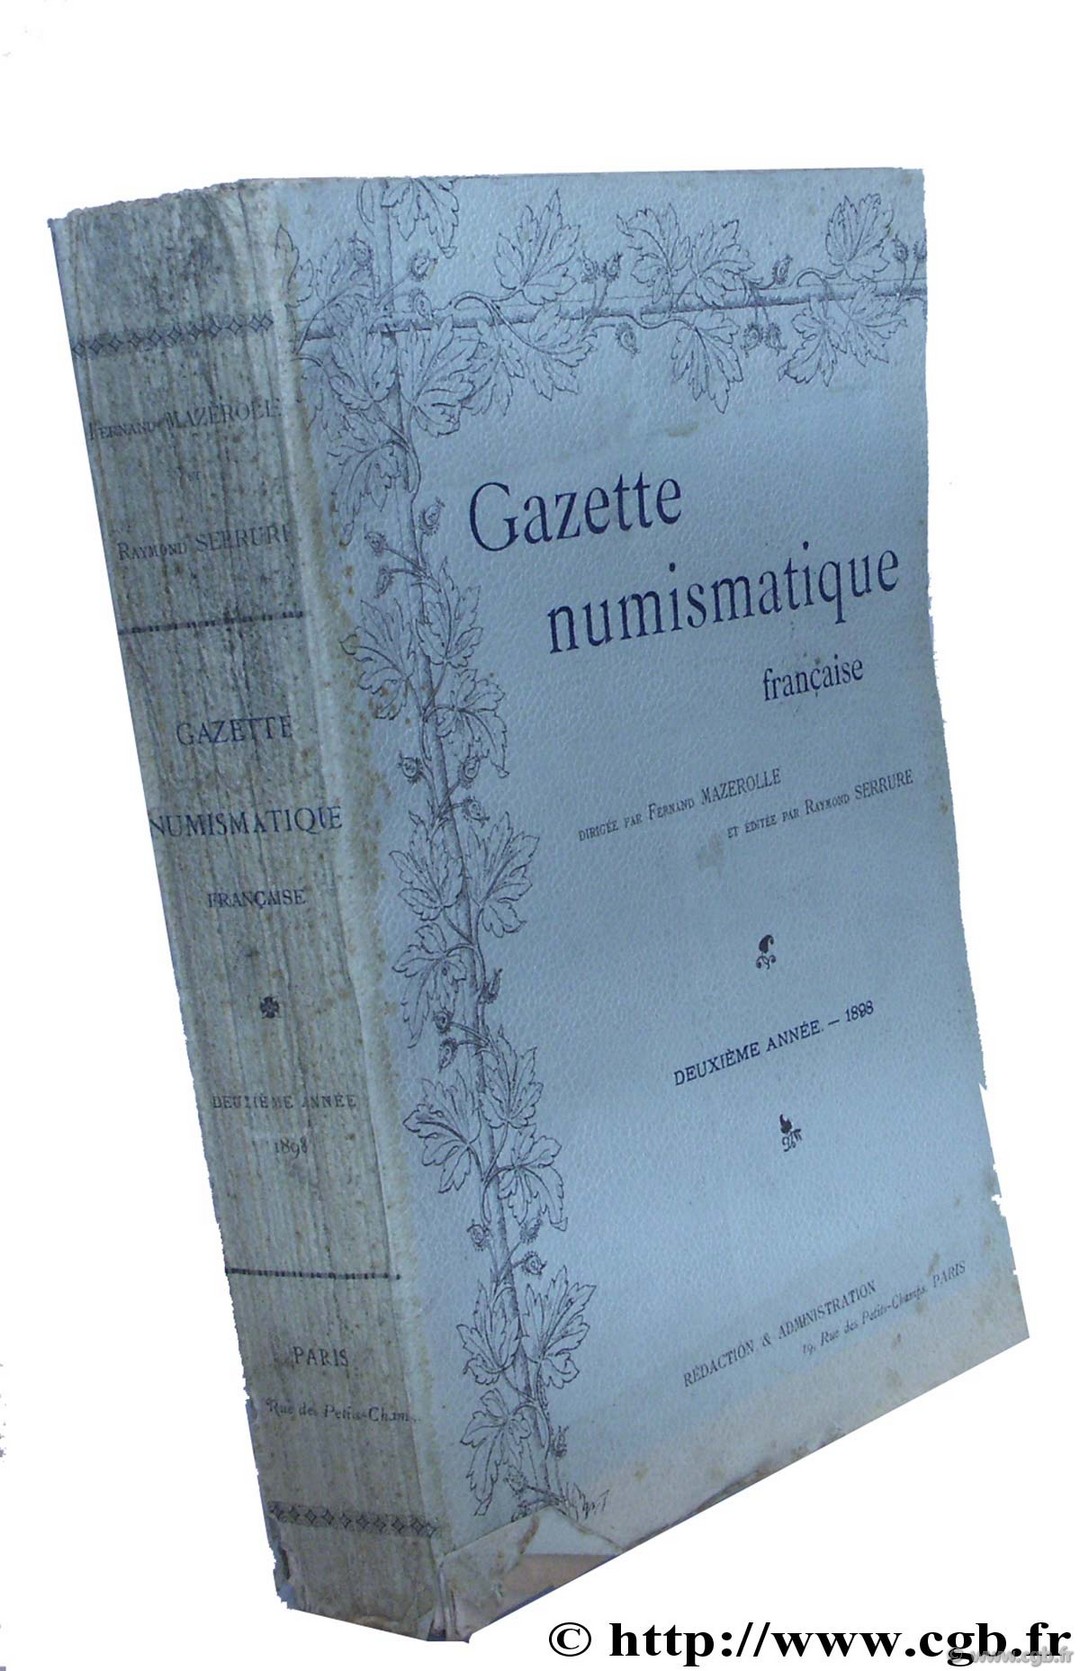 Gazette numismatique française 1898 